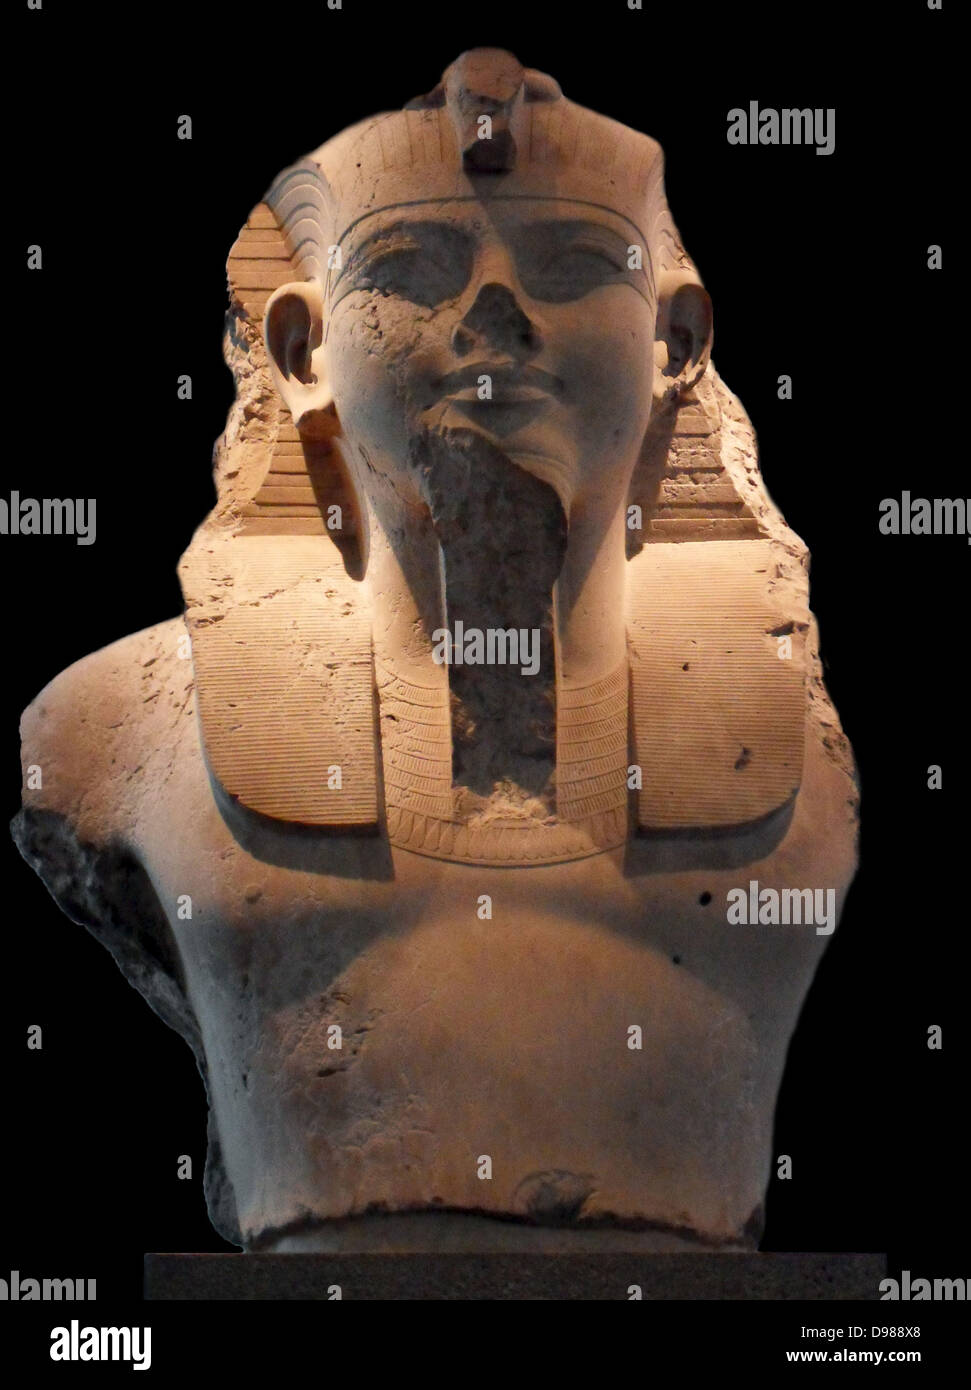 Kolossale Kalkstein Büste von Amenhotep III. aus dem Totentempel von Amenophis III, Theben, Ägypten. 18. Dynastie, etwa 1350 v. Chr.. Amenhotep III. in Auftrag gegeben Hunderte von Skulpturen für seine Totentempel auf dem Westufer des Nils in Theben, obwohl die genauen ursprünglichen Speicherort der meisten von ihnen nicht bekannt ist. Sie enthalten nicht nur die Figuren des Königs, sondern auch eine große Auswahl an tierischen Skulpturen in einer Vielzahl von Steinen. Stockfoto